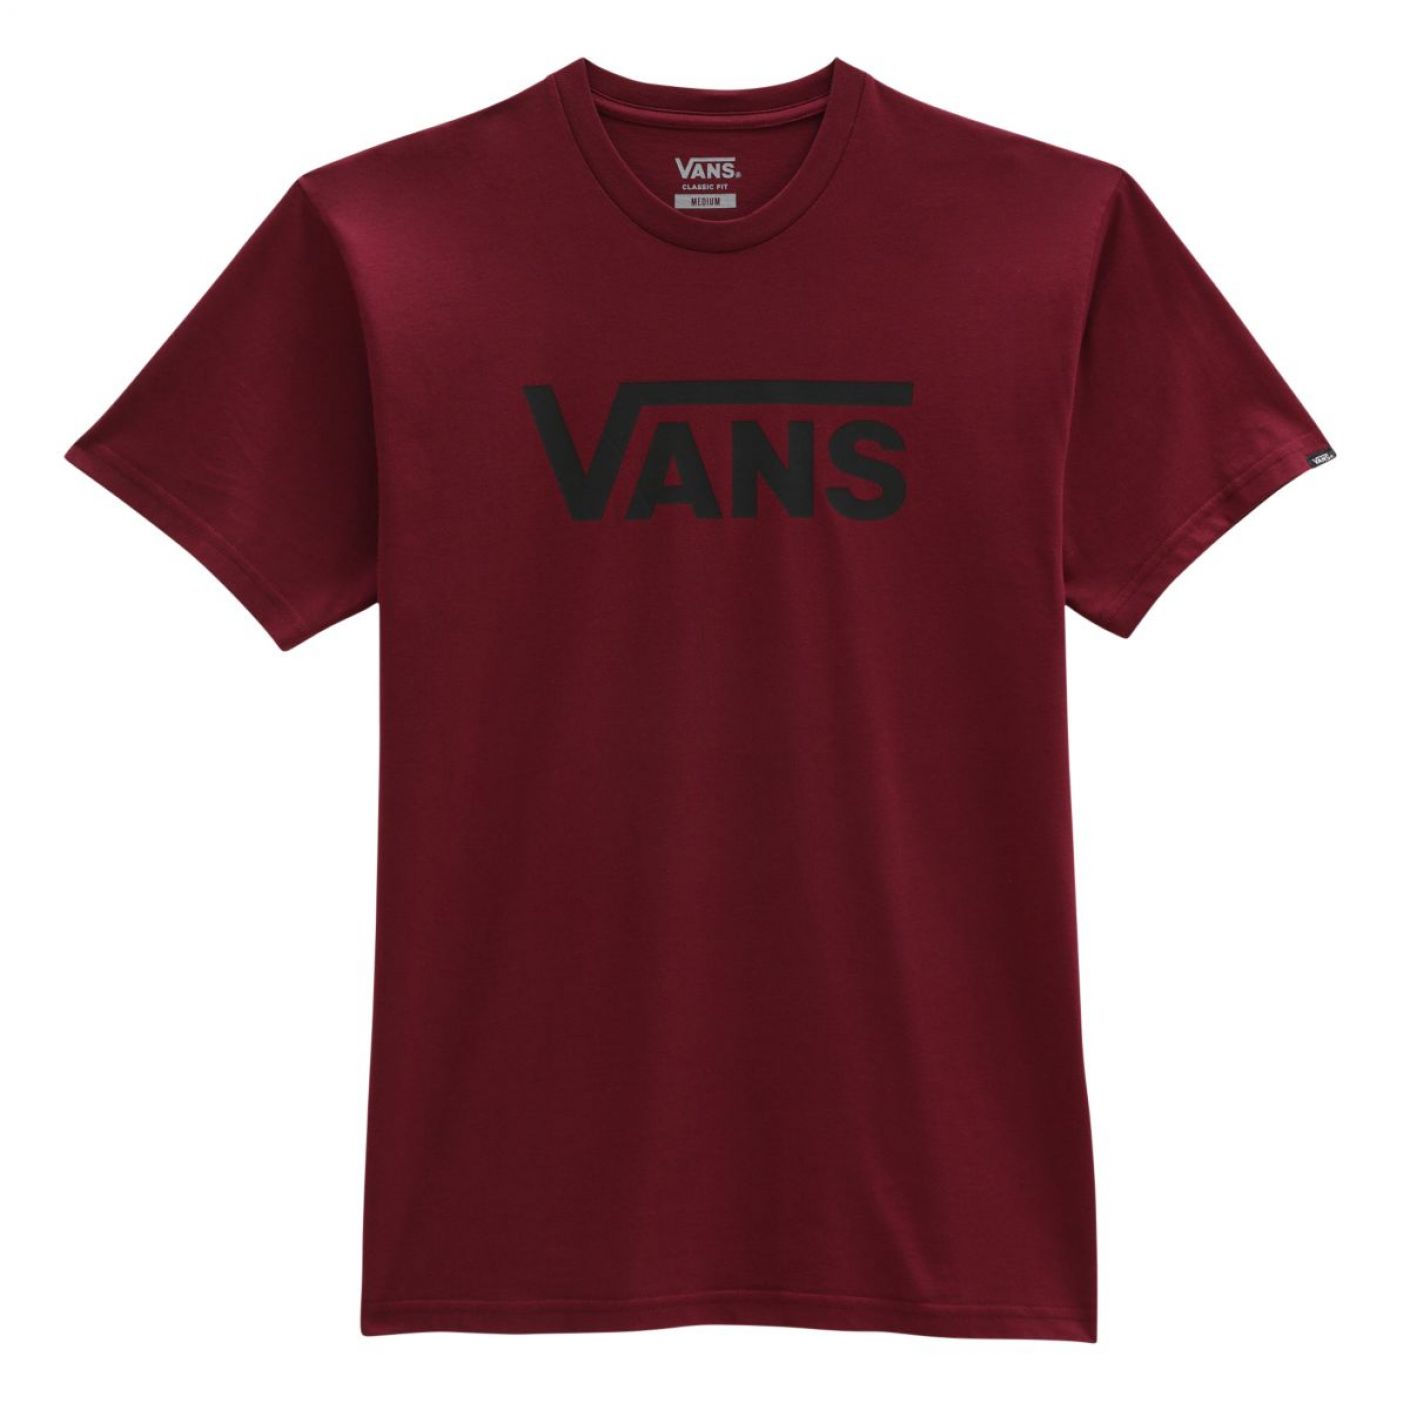 Vans T-shirt Man Classic Bordeaux